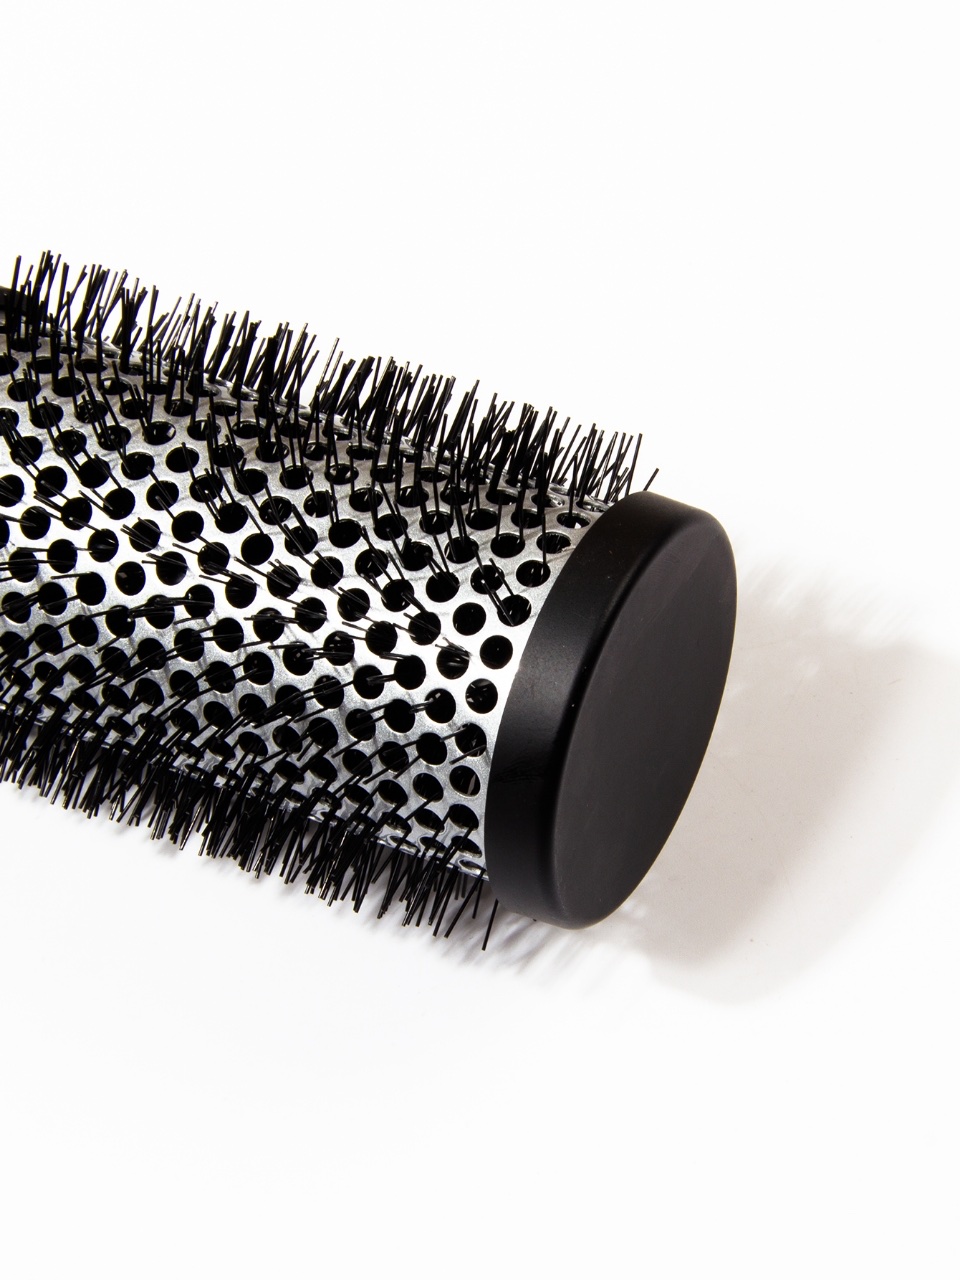 慧琳新品铝桶卷发梳1个用于卷发和烫染外贸专供 适合各种发质发型